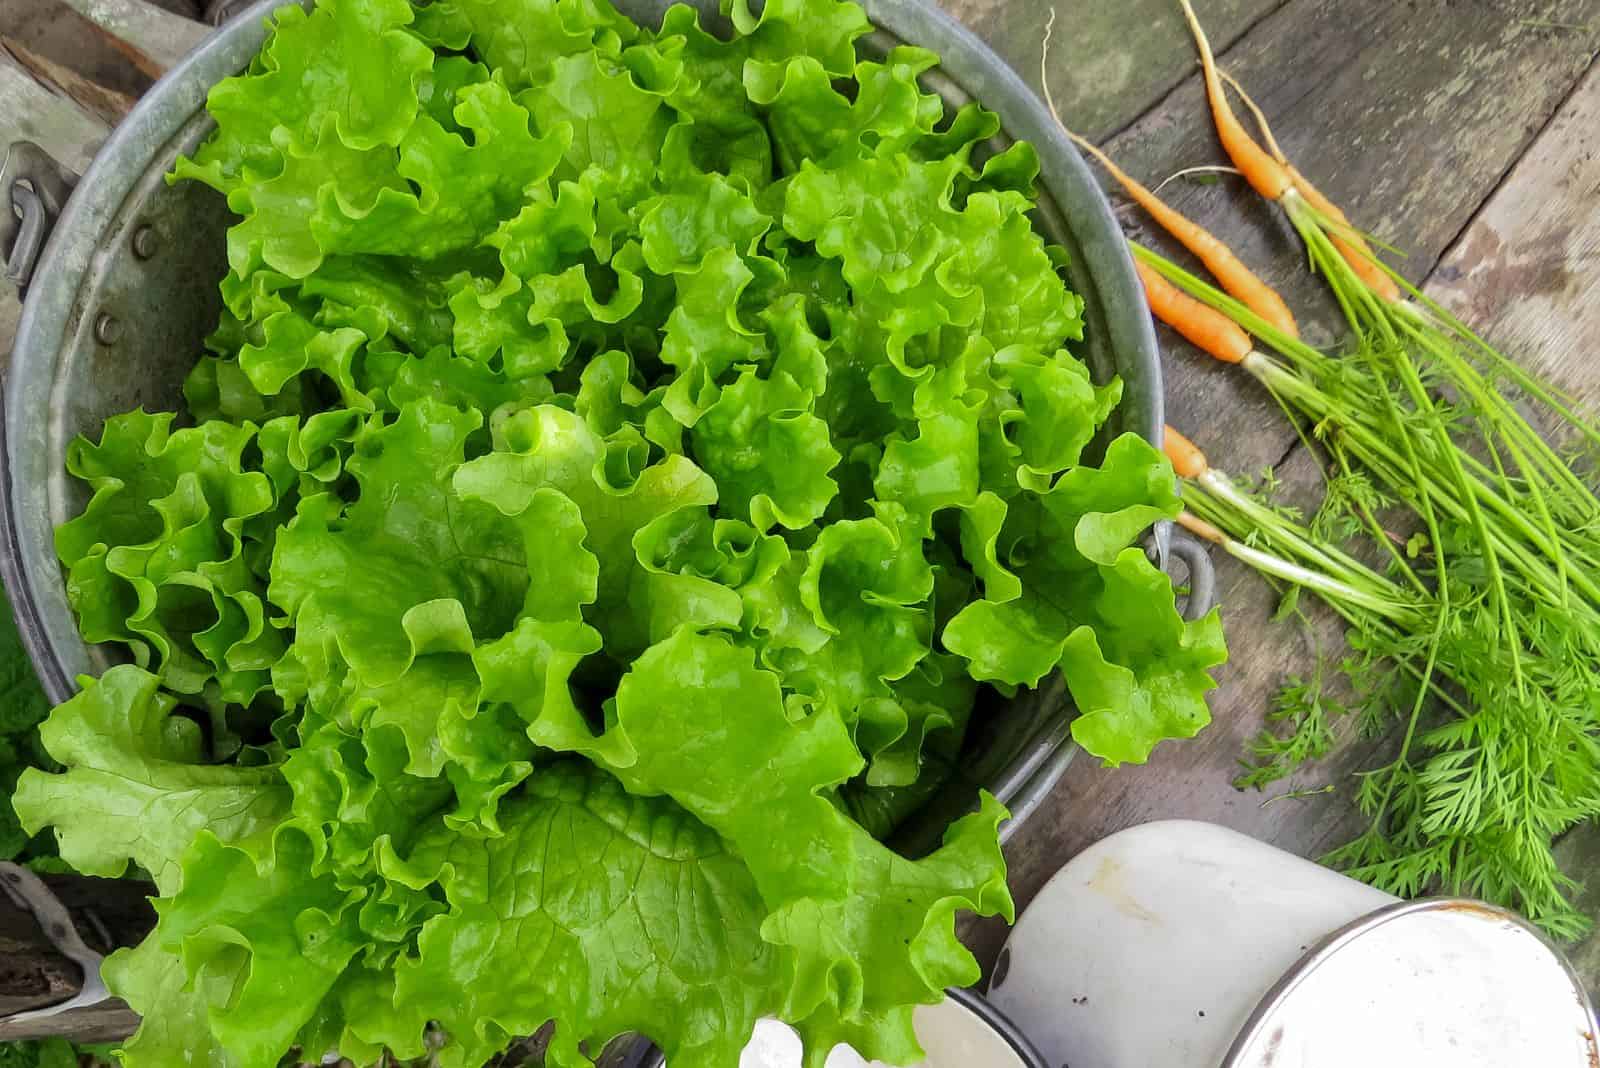 Bunch of fresh, green lettuce in a bucket